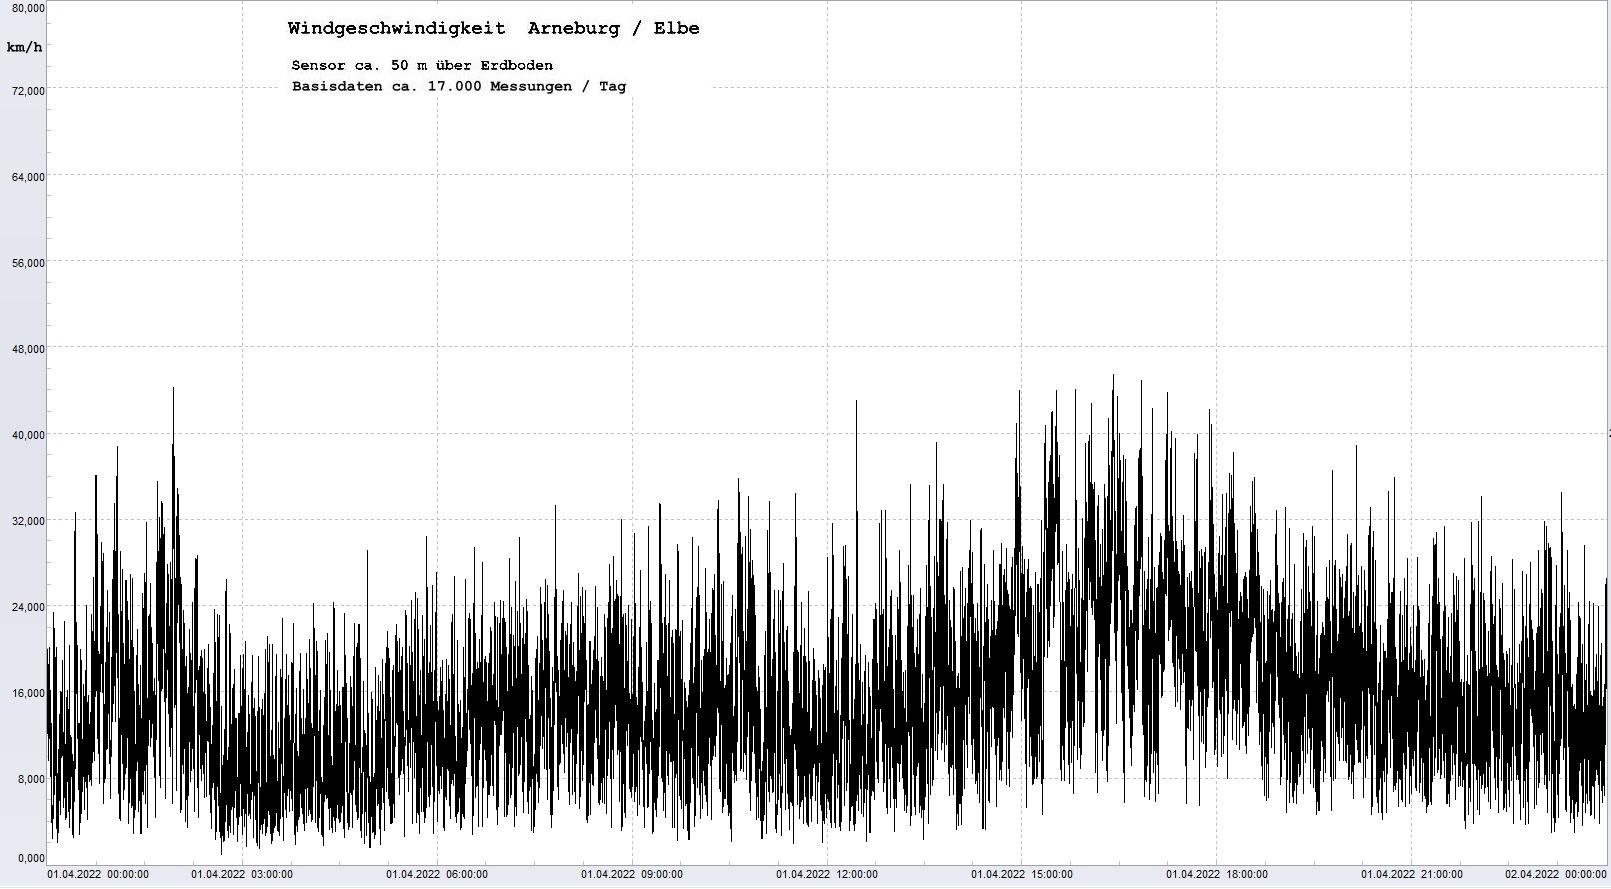 Arneburg Tages-Diagramm Winddaten, 01.04.2023
  Diagramm, Sensor auf Gebäude, ca. 50 m über Erdboden, Basis: 5s-Aufzeichnung